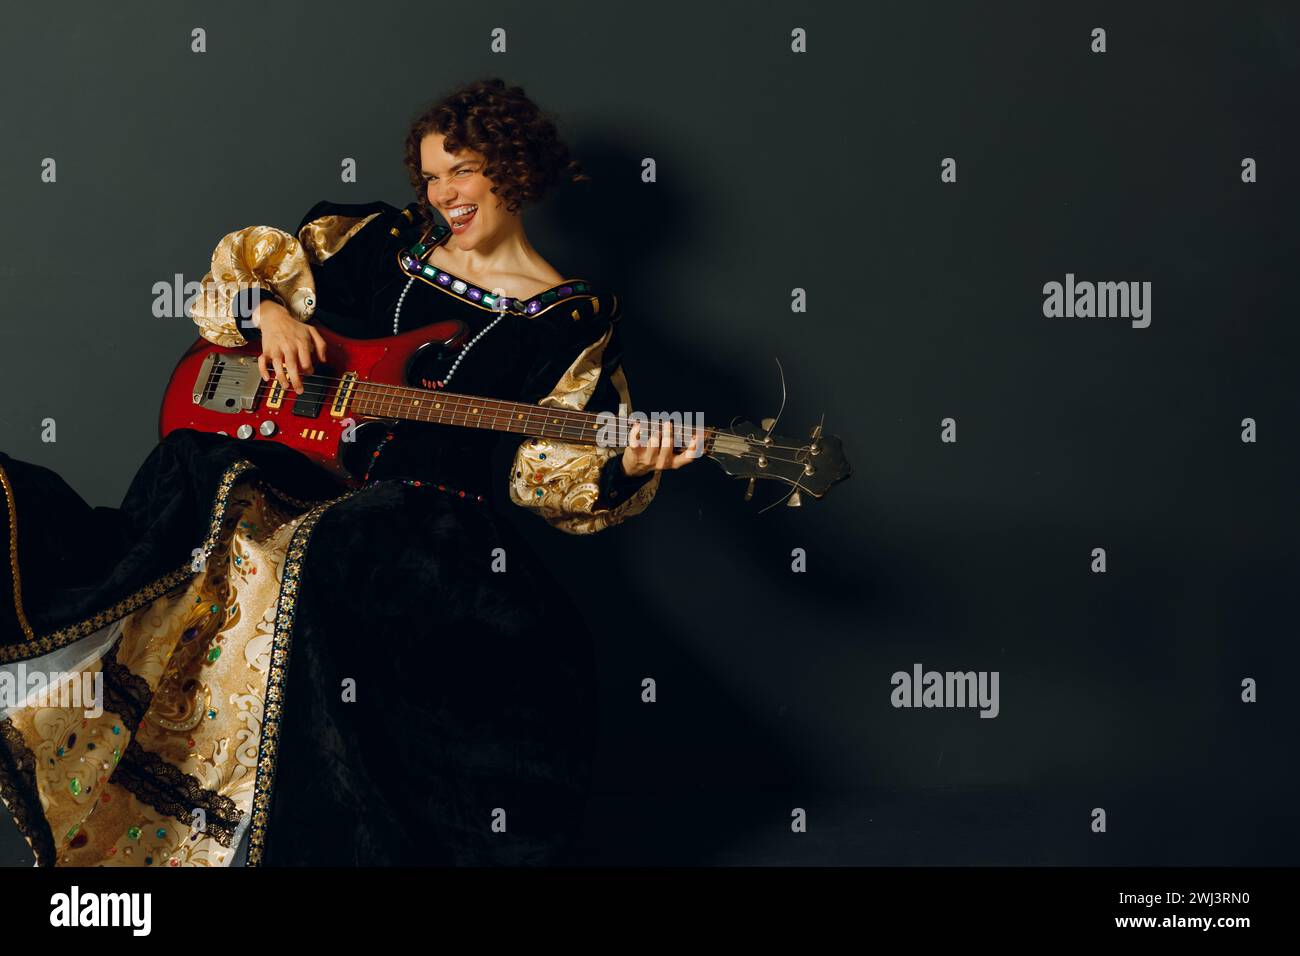 Ritratto di una giovane donna adulta che suona musica rock con la chitarra elettrica e indossa un abito medievale. Foto Stock